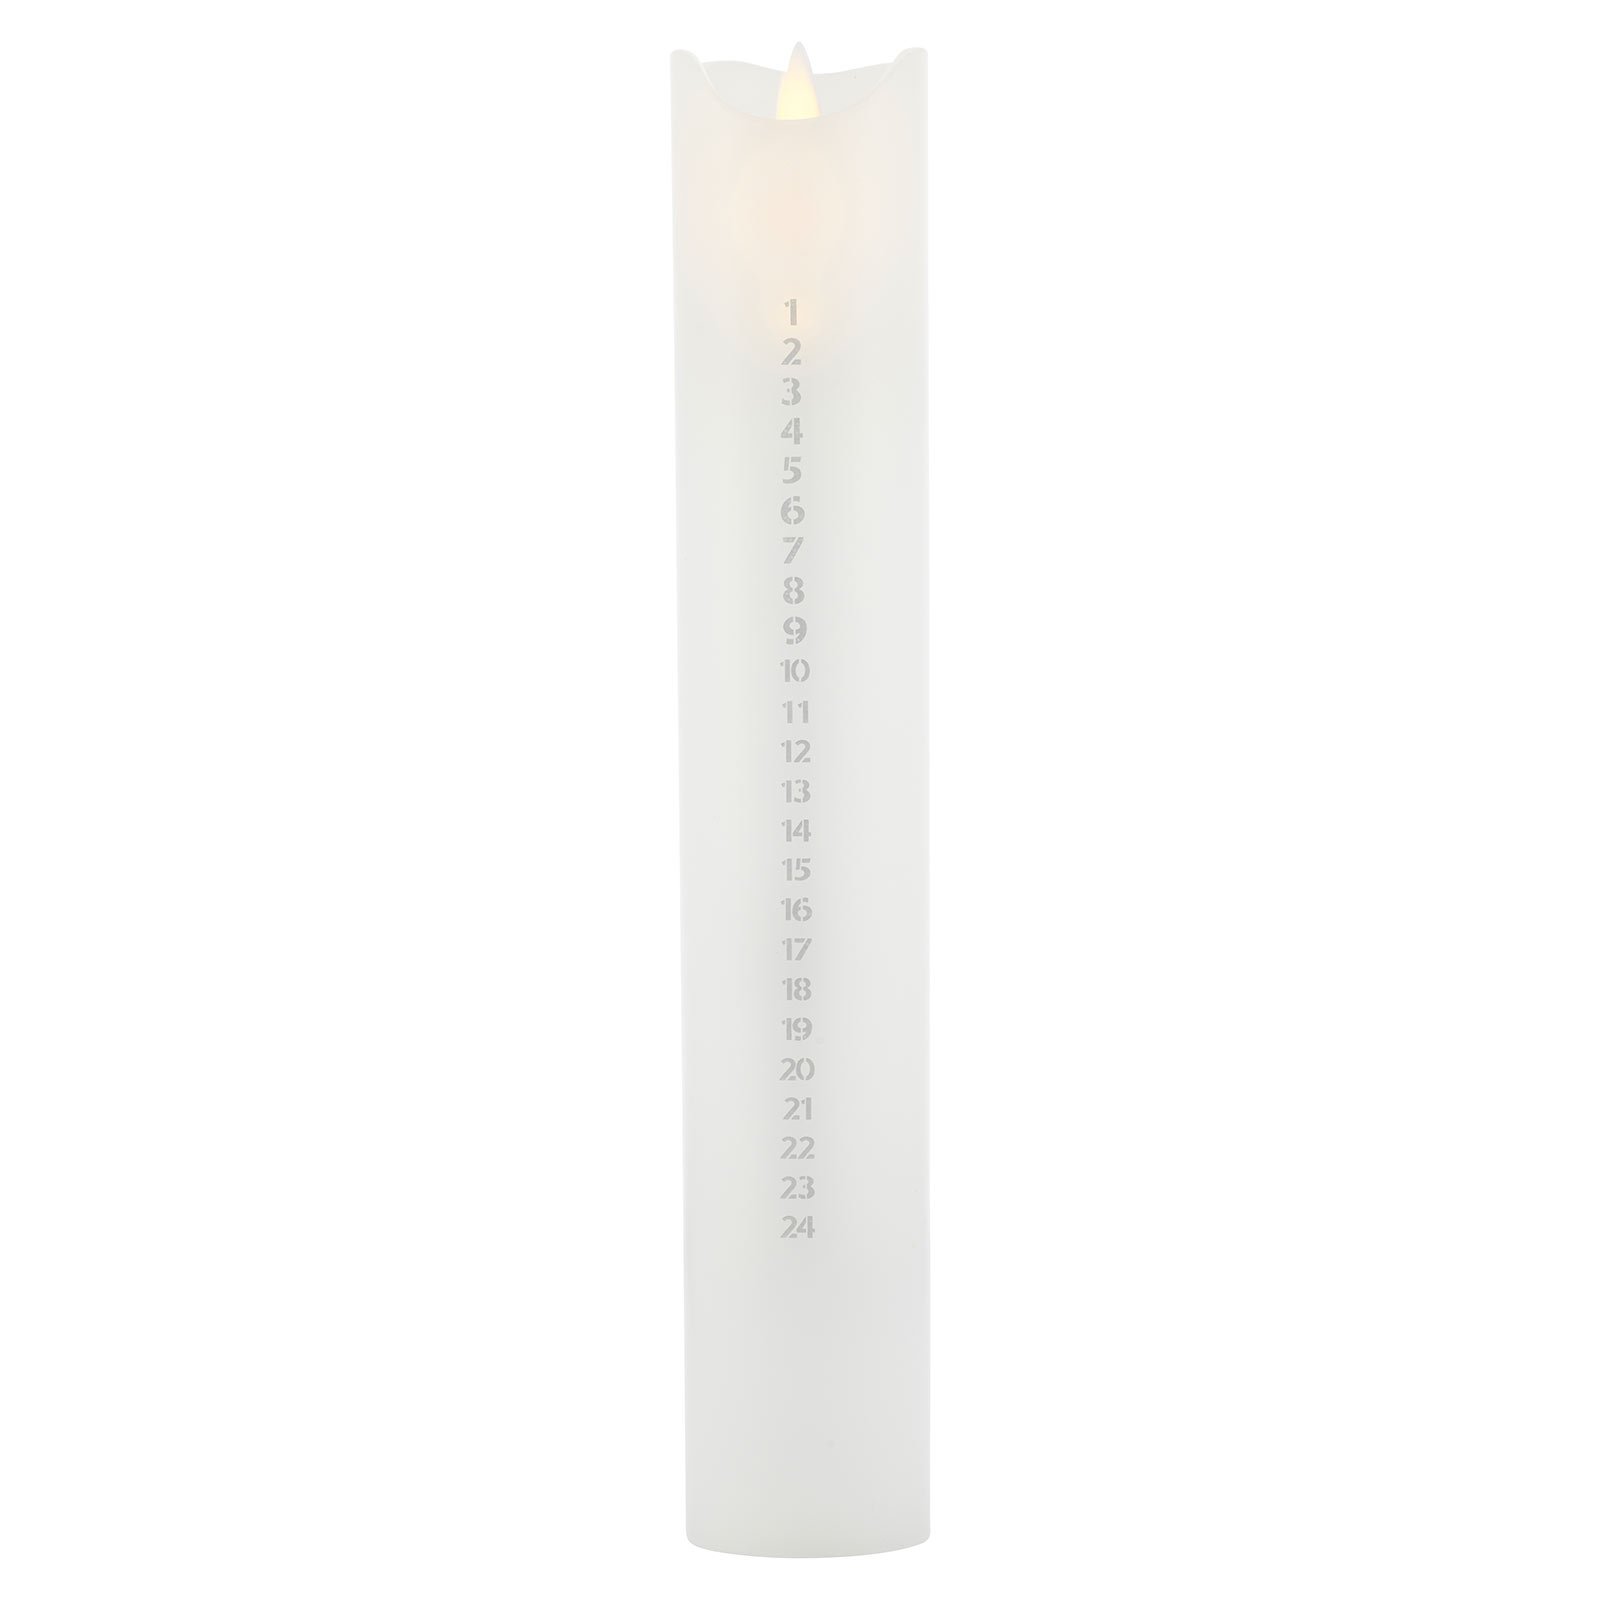 Svíčka LED Sara Calendar, bílá/stříbrná, výška 29 cm